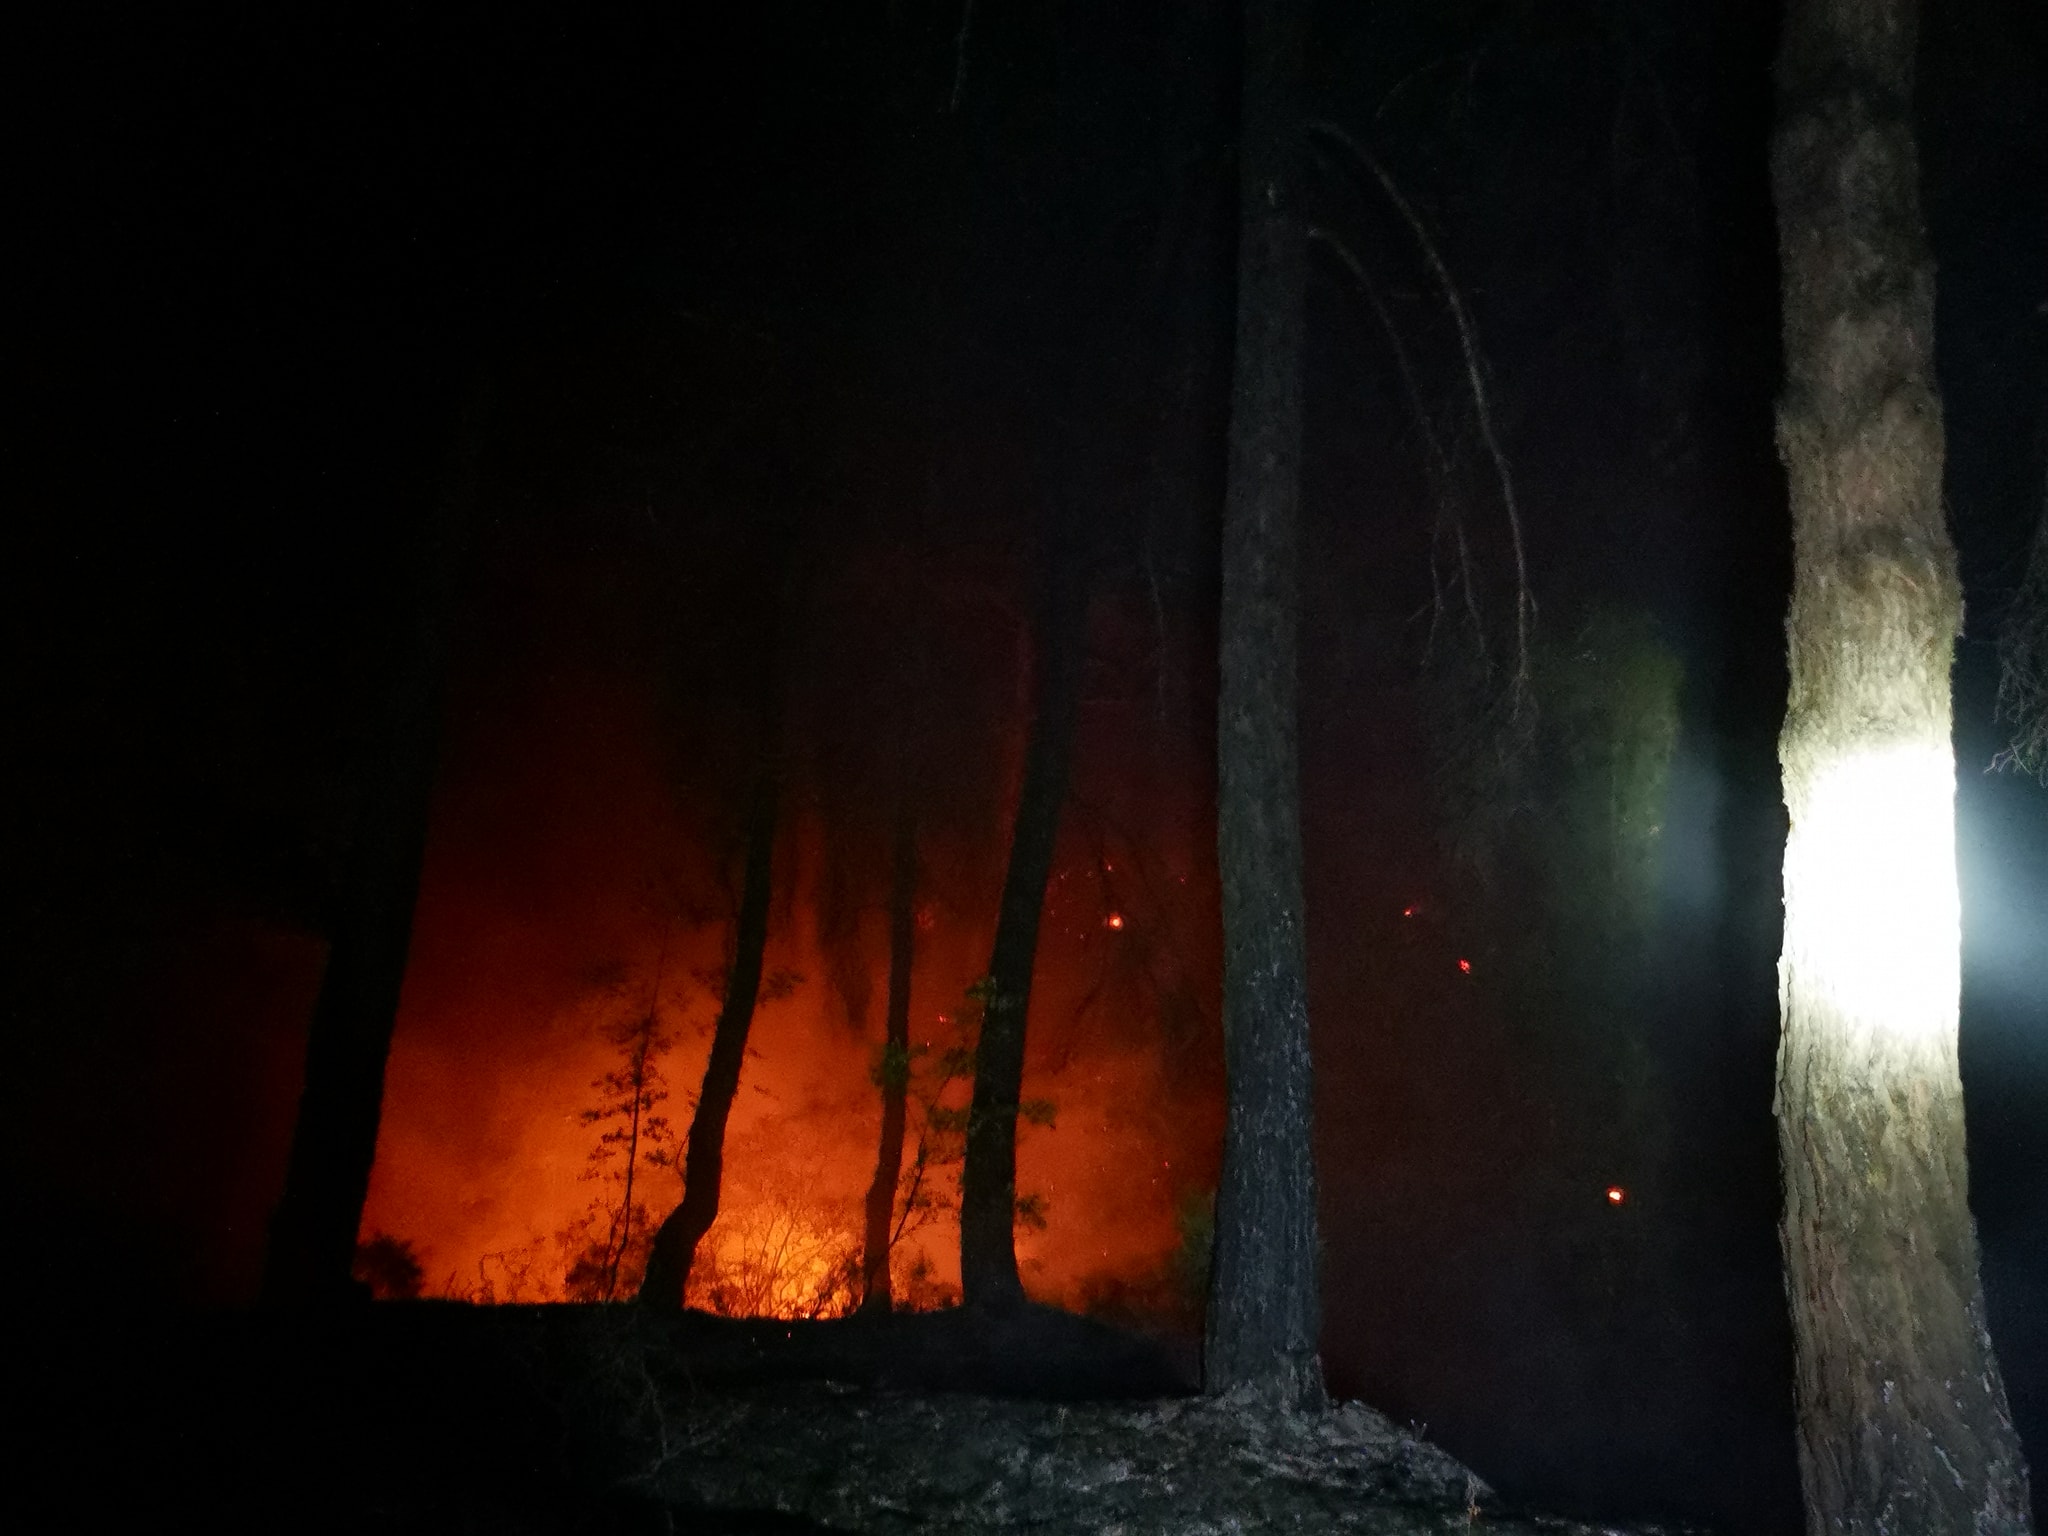 Έβρος: Φωτιά που περιορίστηκε ευτυχώς γρήγορα, ξέσπασε στις “3 Βρύσες Σουφλίου” (video)- Μεγάλη προσοχή για τις υπόλοιπες μέρες λόγω ενίσχυσης των ανέμων